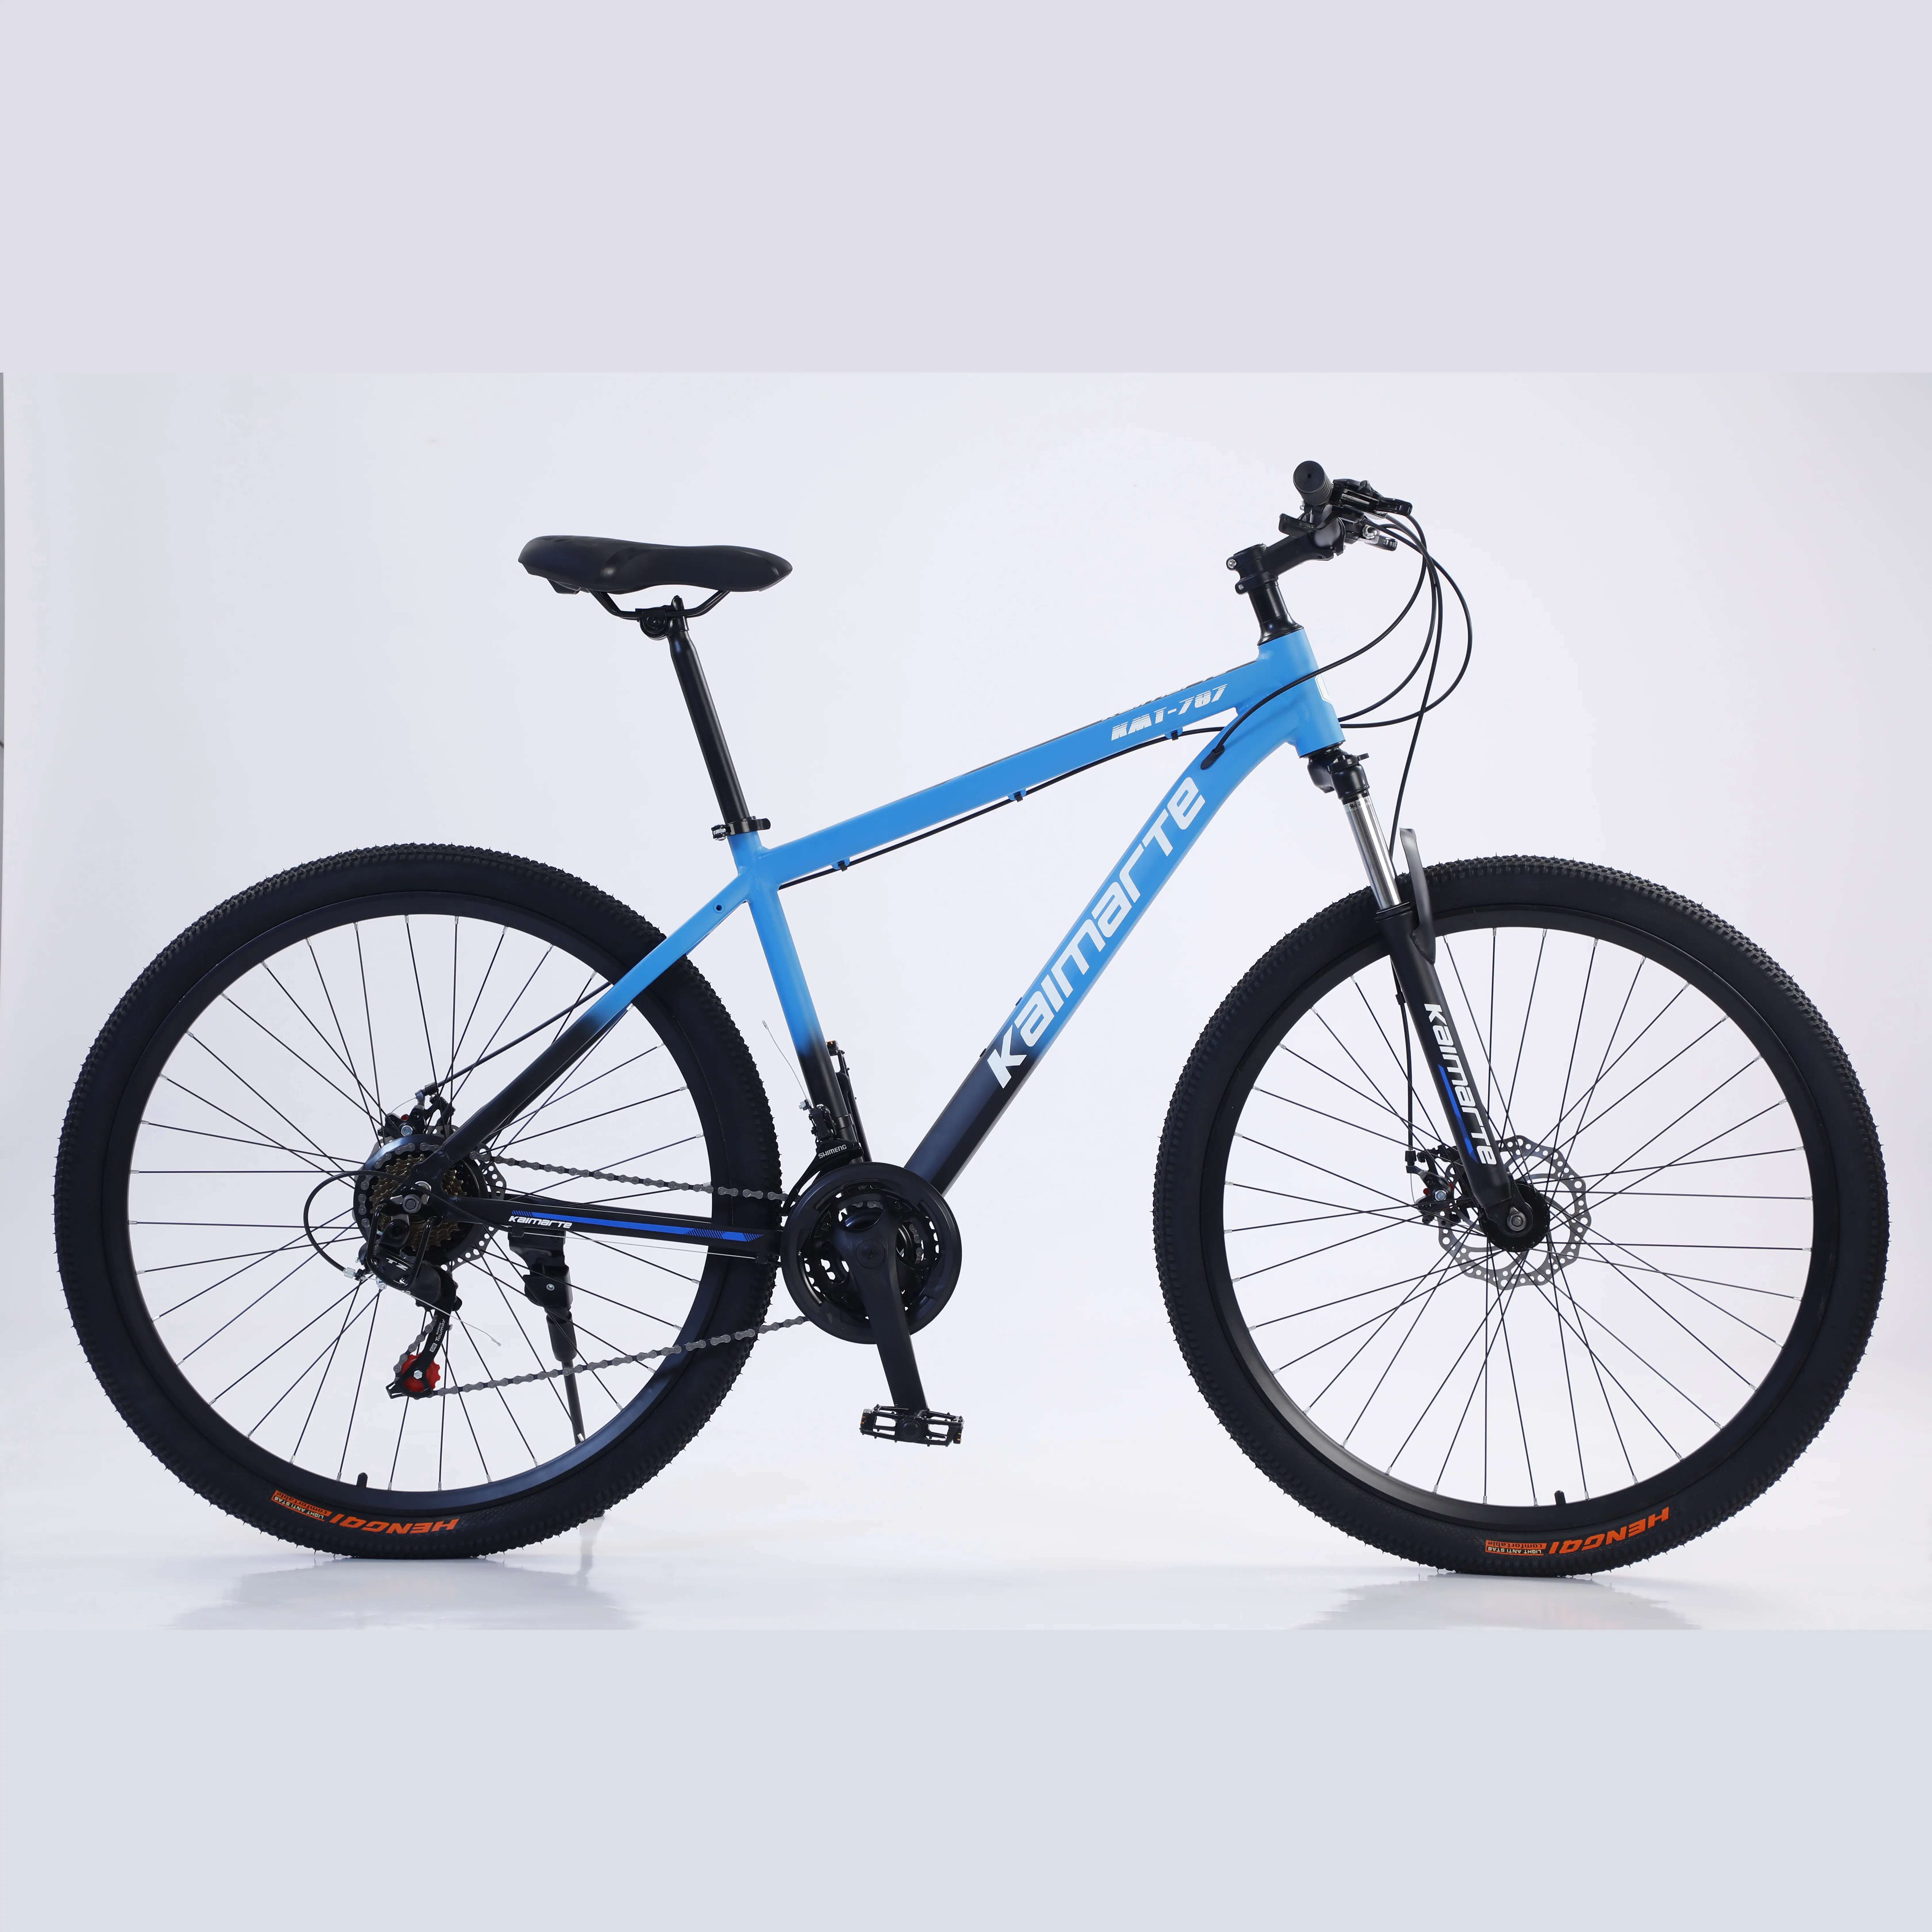 Light 24 26 27.5 29インチレーサー自転車ロードバイク/折りたたみ式マウンテンバイク、高品質で簡単に折りたたむ/持ち運びに便利な合金